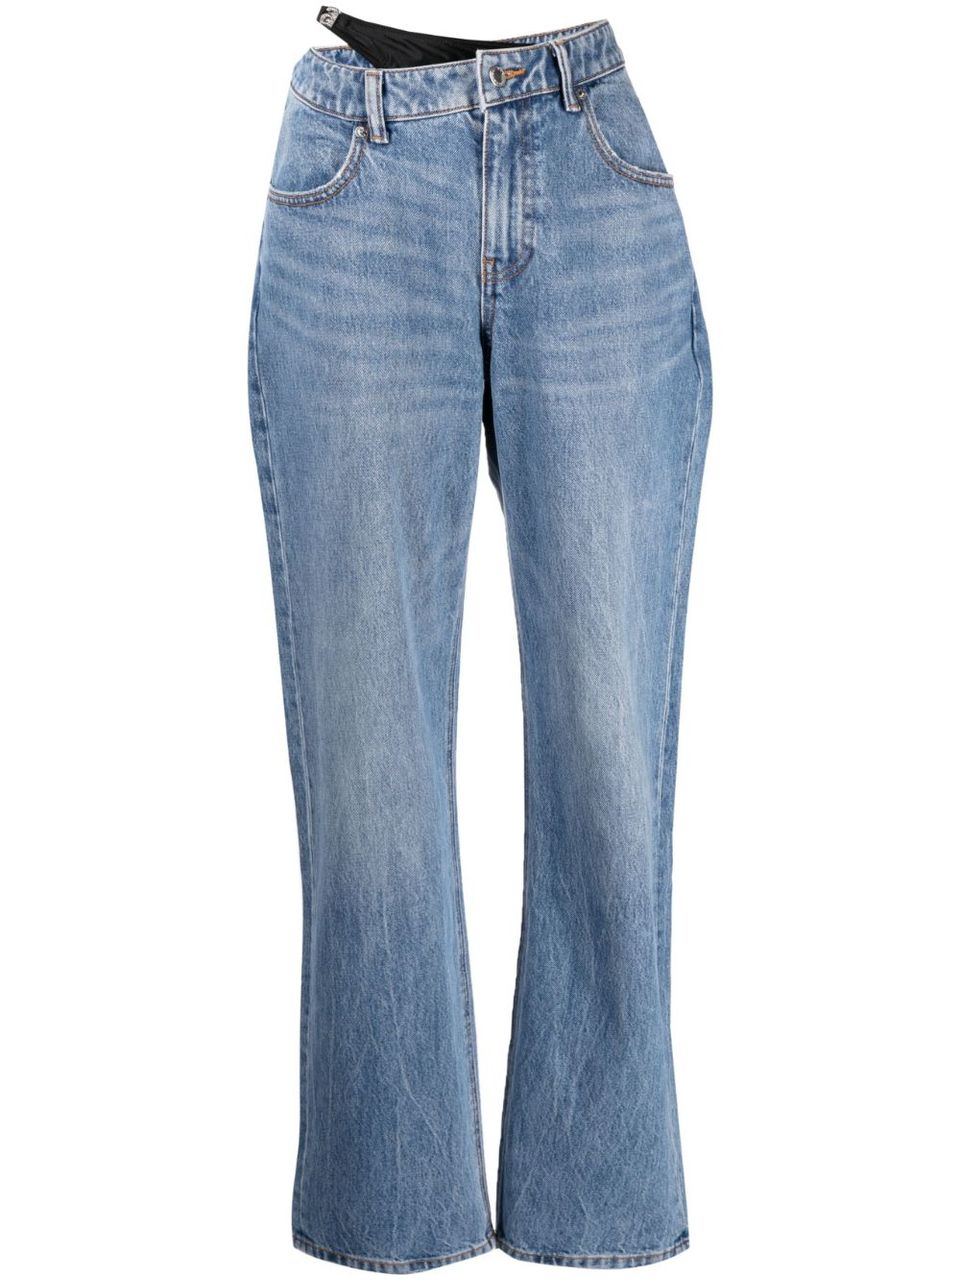 Jeans dettaglio bikini